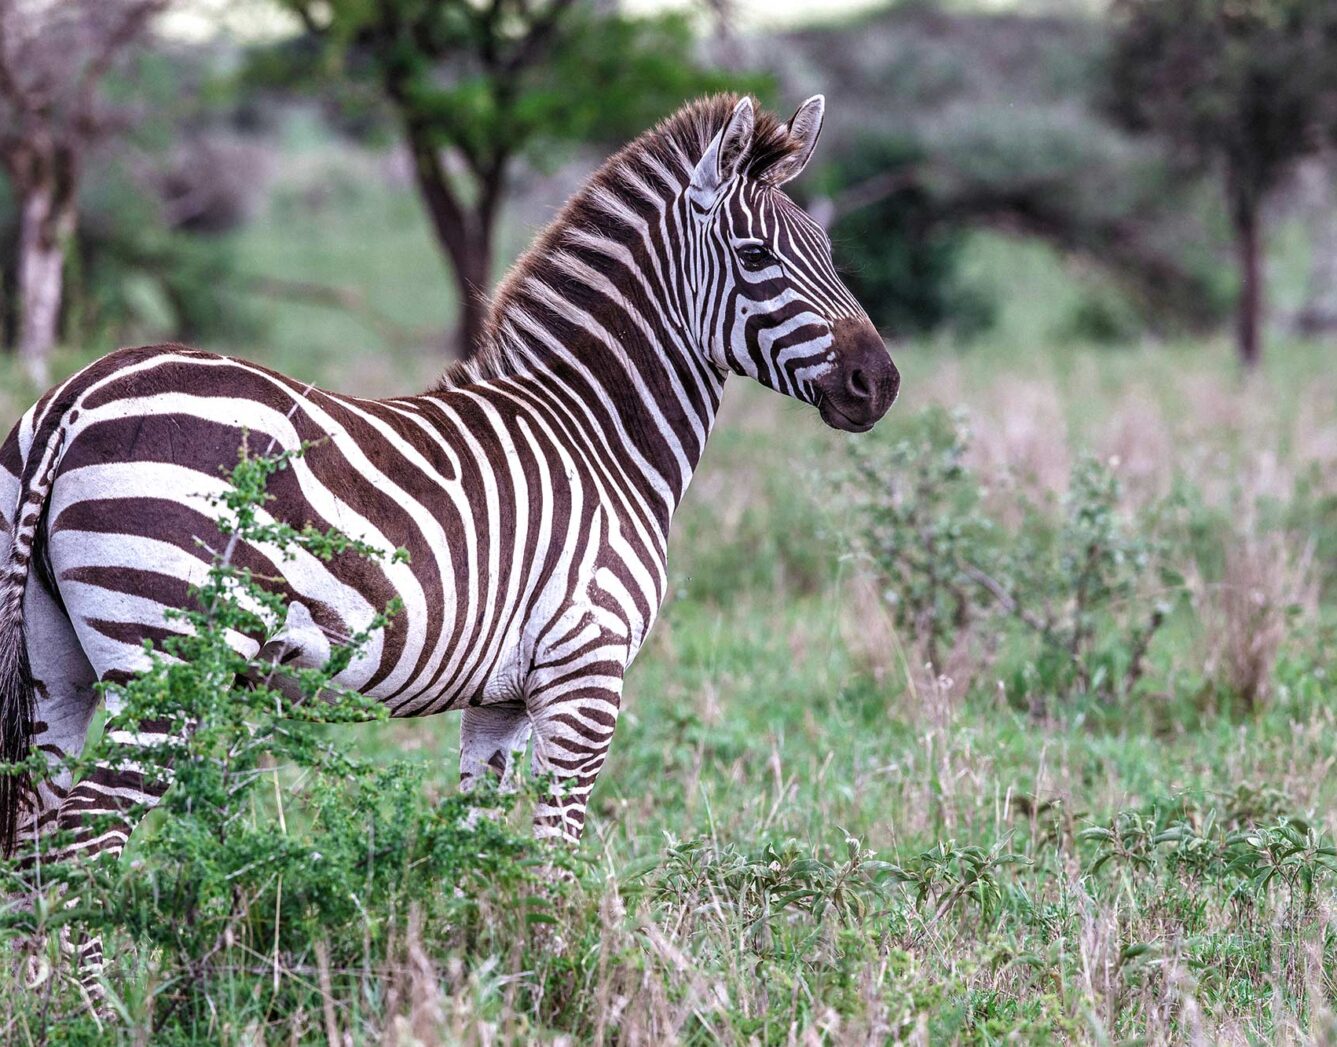 A zebra stands in the grass